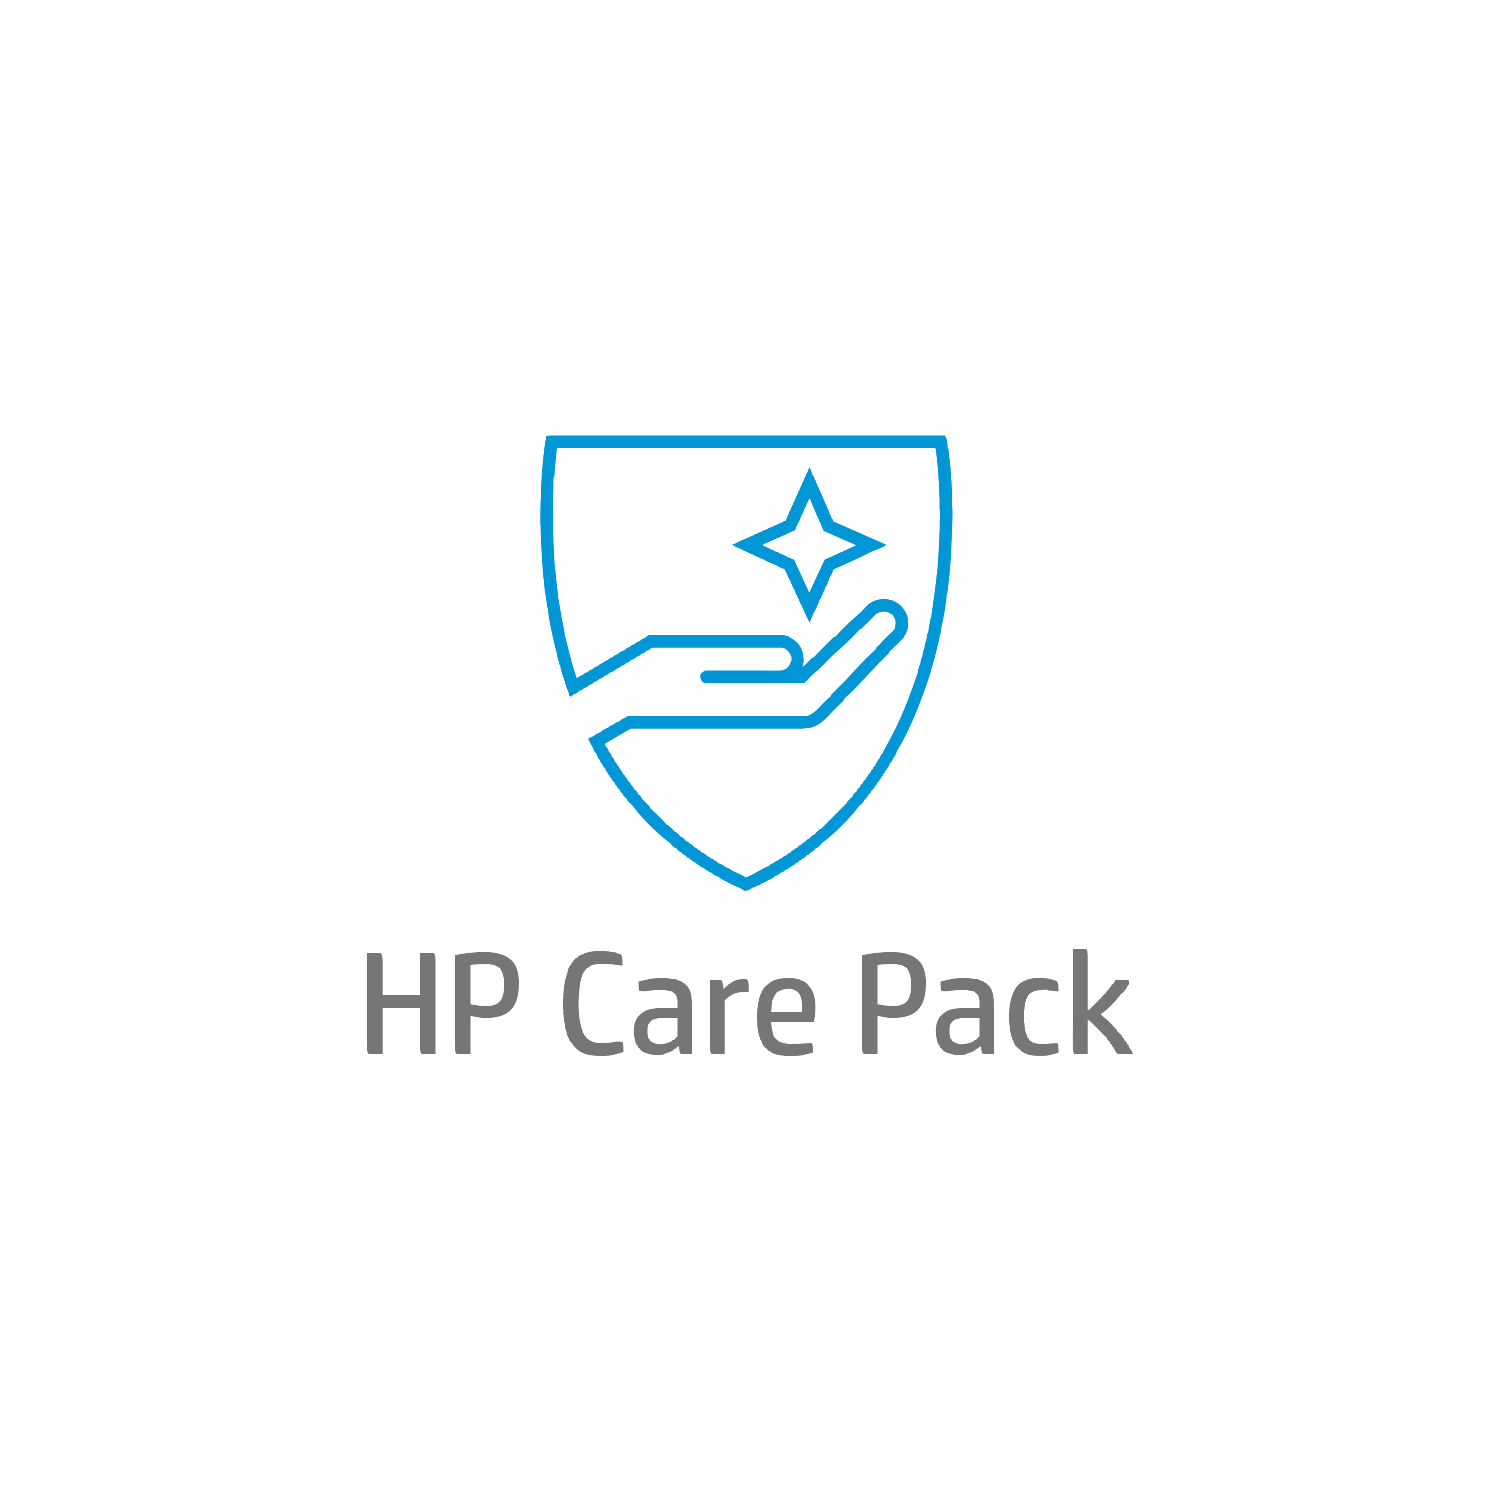 Bild von HP 4 Jahre Active Care Hardware-Support vor Ort mit Reaktion bis zum nächsten Werktag und Schutz gegen versehentliche Schäden für Notebooks - Active Care - Remote und vor Ort - Unter Garantie - Standardarbeitstage - 9 Stunden - 4 Jahre - Reaktion am nächsten